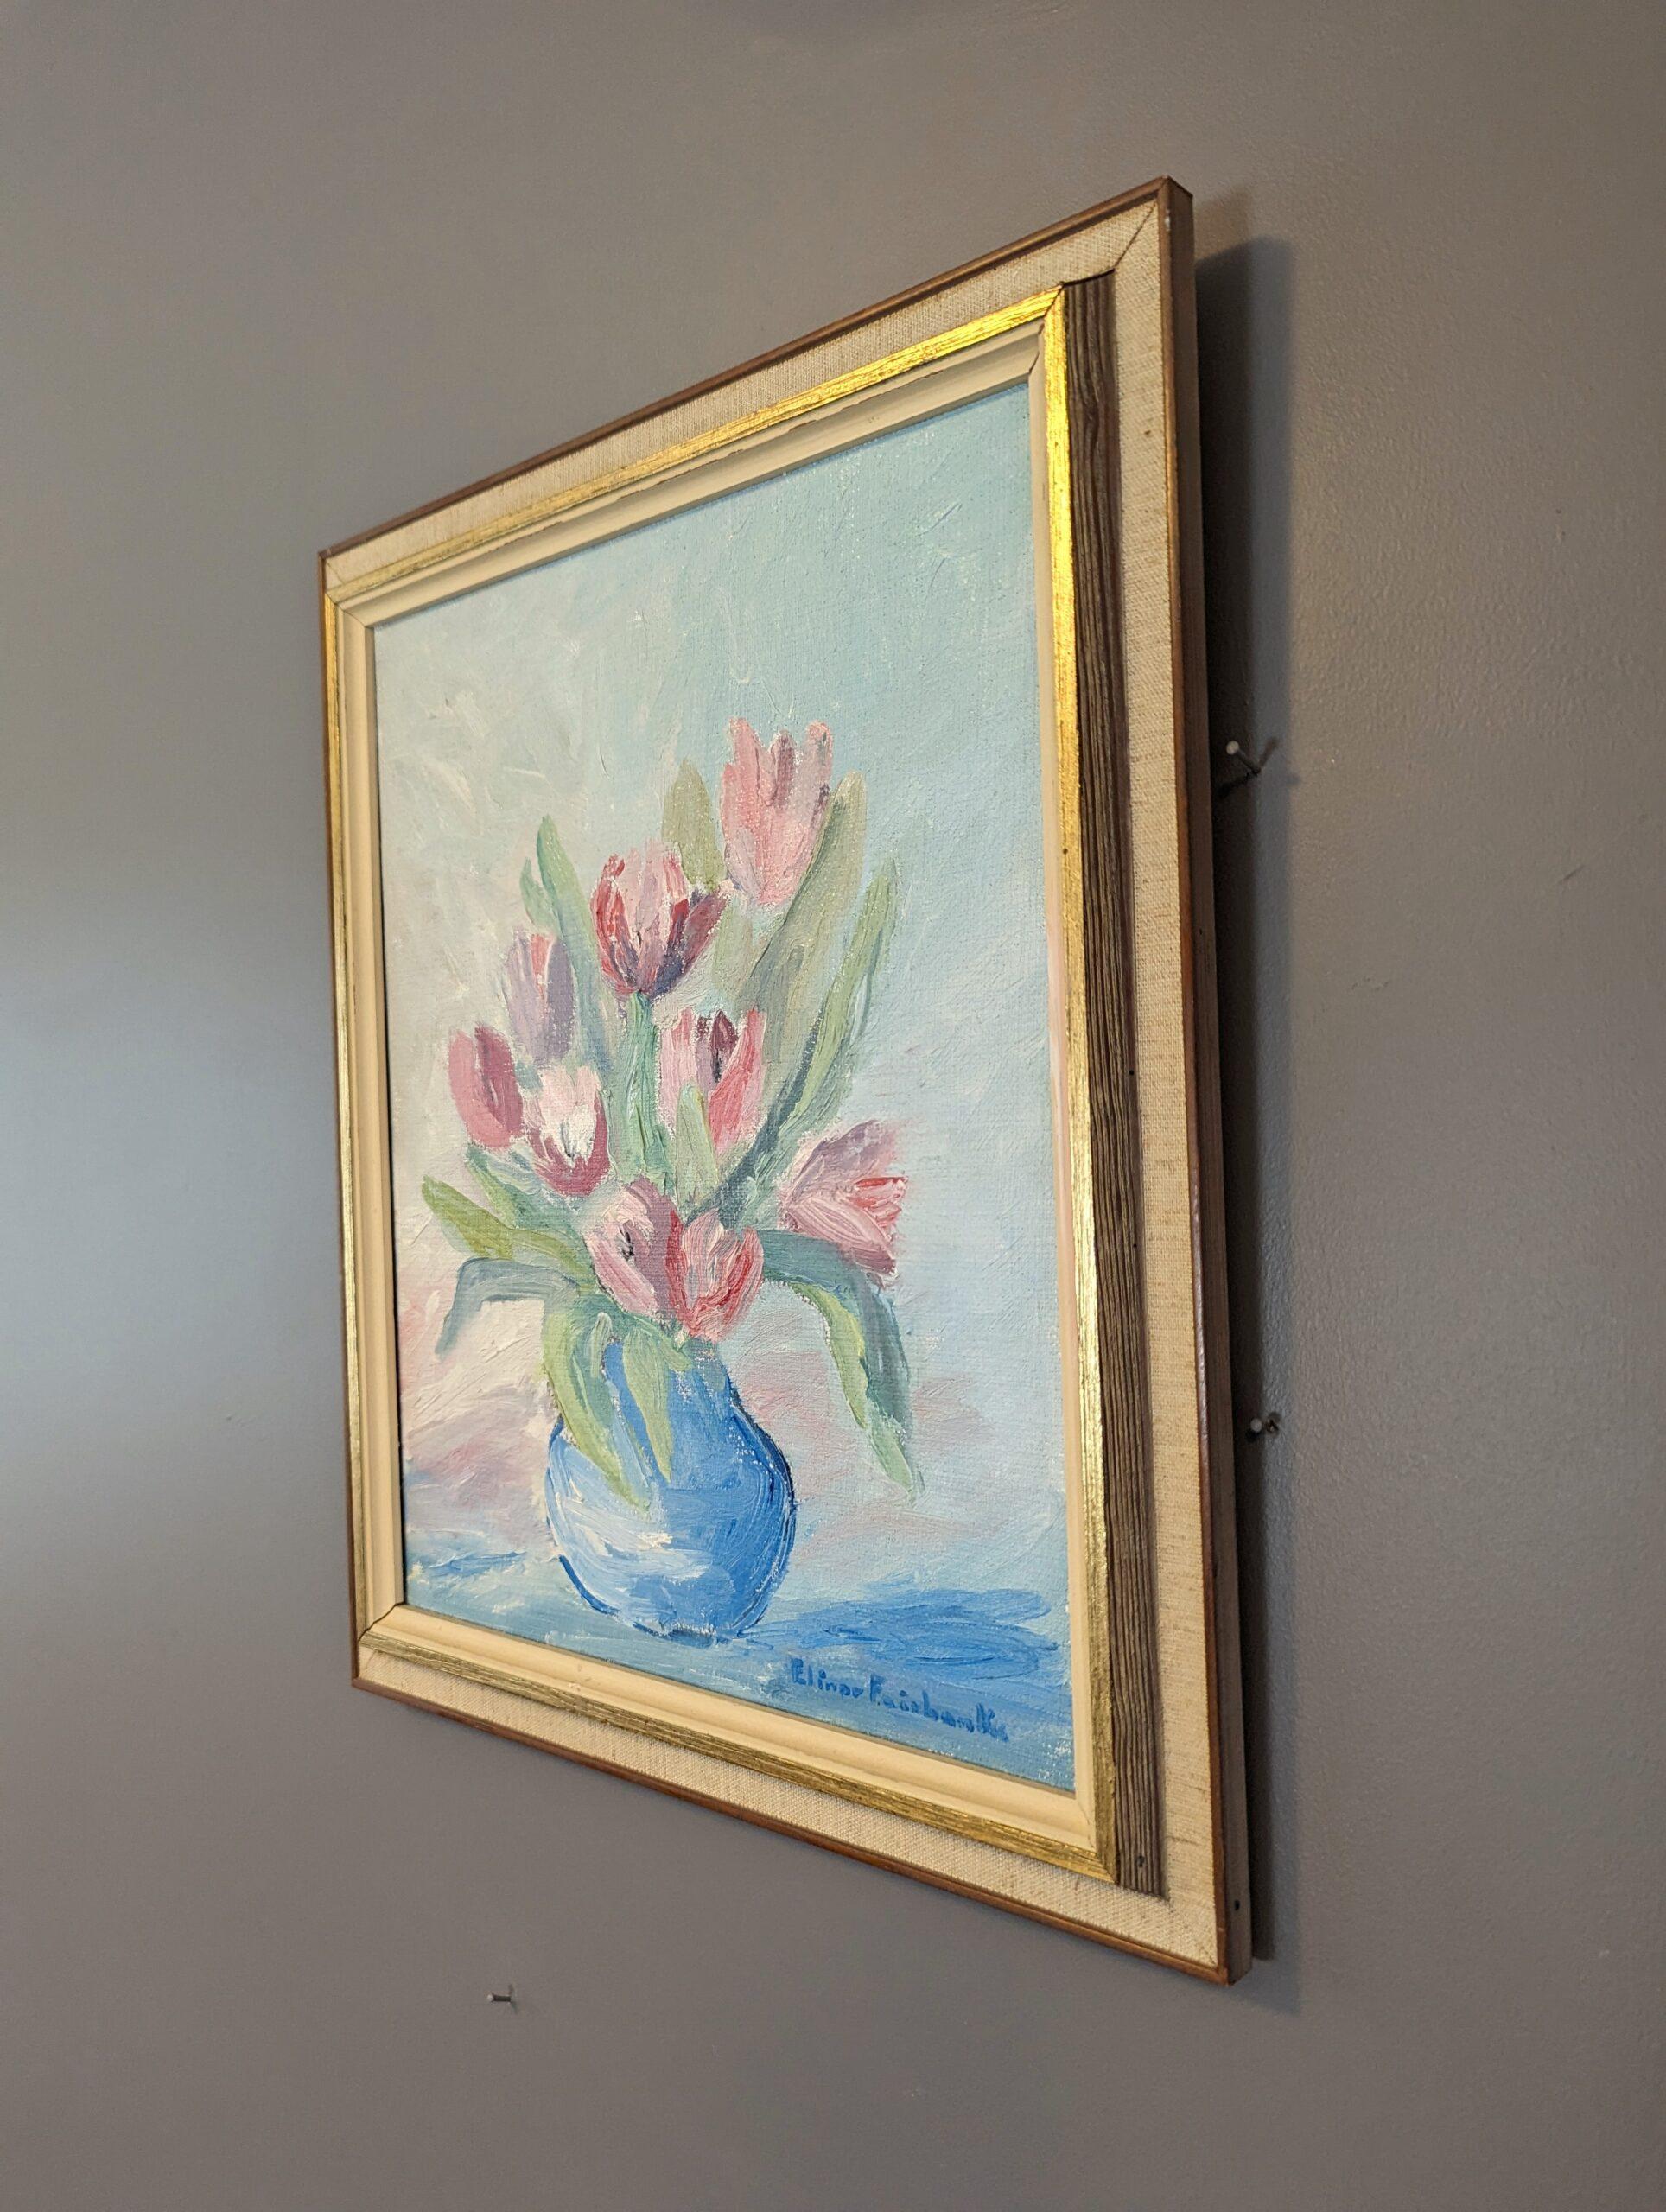 TULPEN IN PASTELLFARBEN
Größe: 38 x 32 cm (einschließlich Rahmen)
Öl auf Leinwand

Eine sehr elegante florale Ölkomposition aus der Mitte des Jahrhunderts, gemalt auf Leinwand.

Bei diesem Blumenbild handelt es sich um hellrosa Tulpen in einer